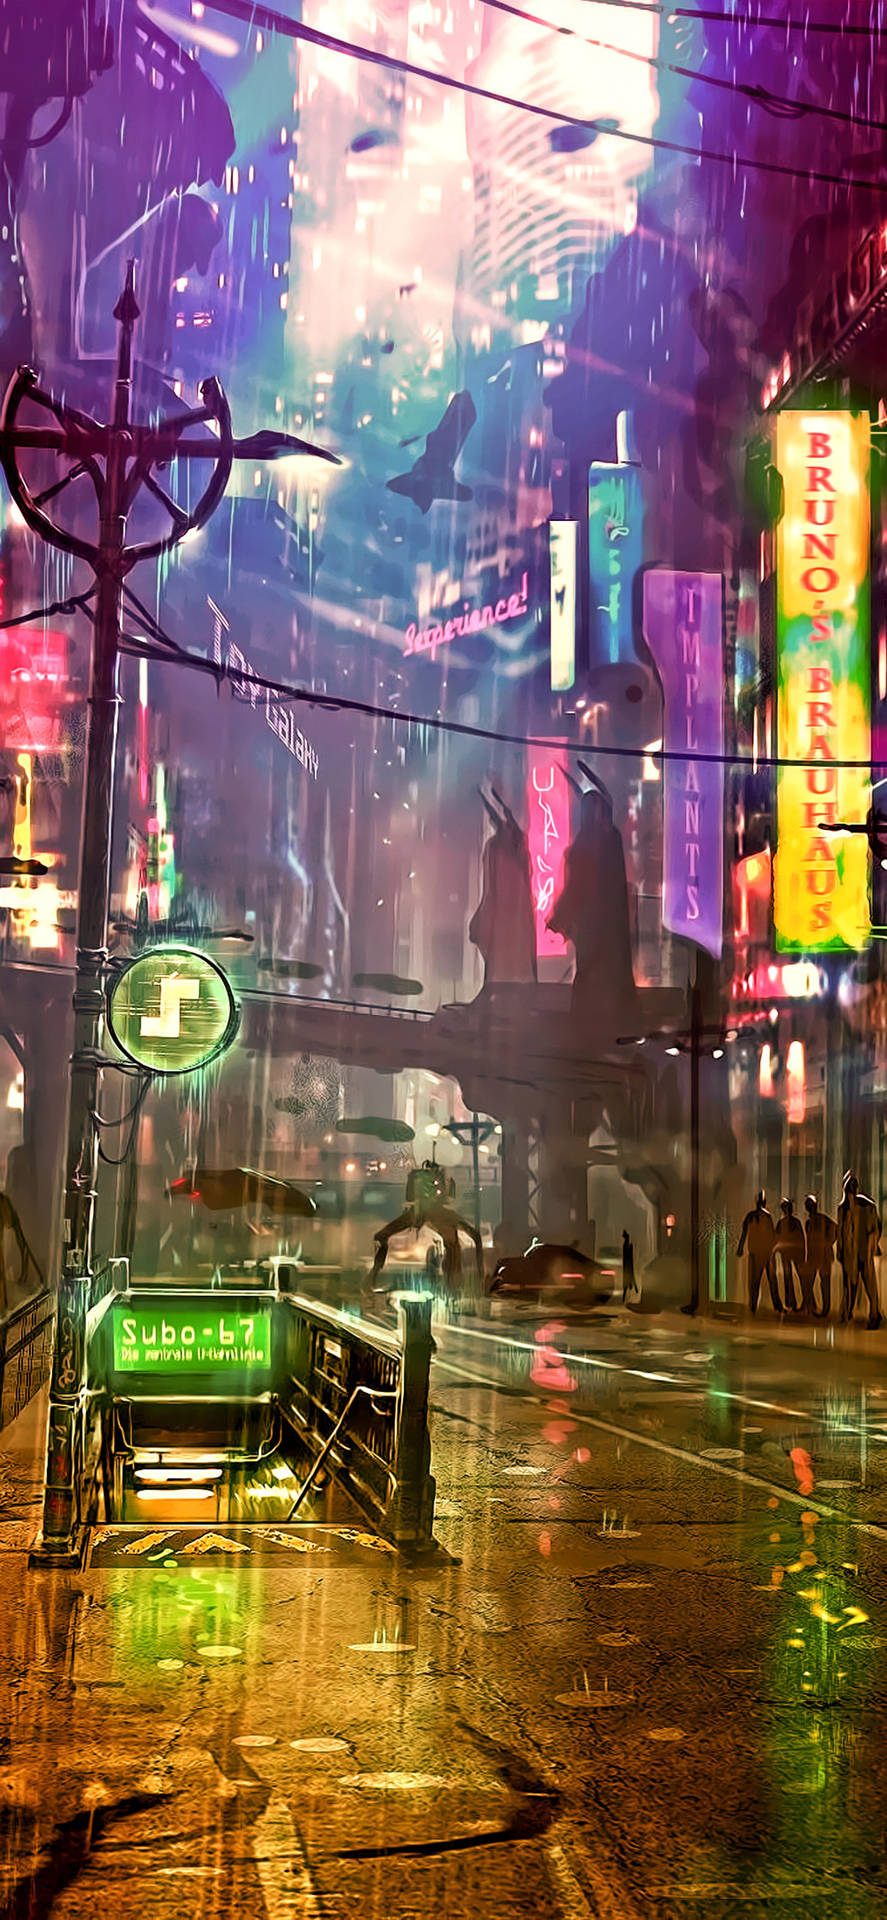 Futuristic City Artwork Cyberpunk Iphone X